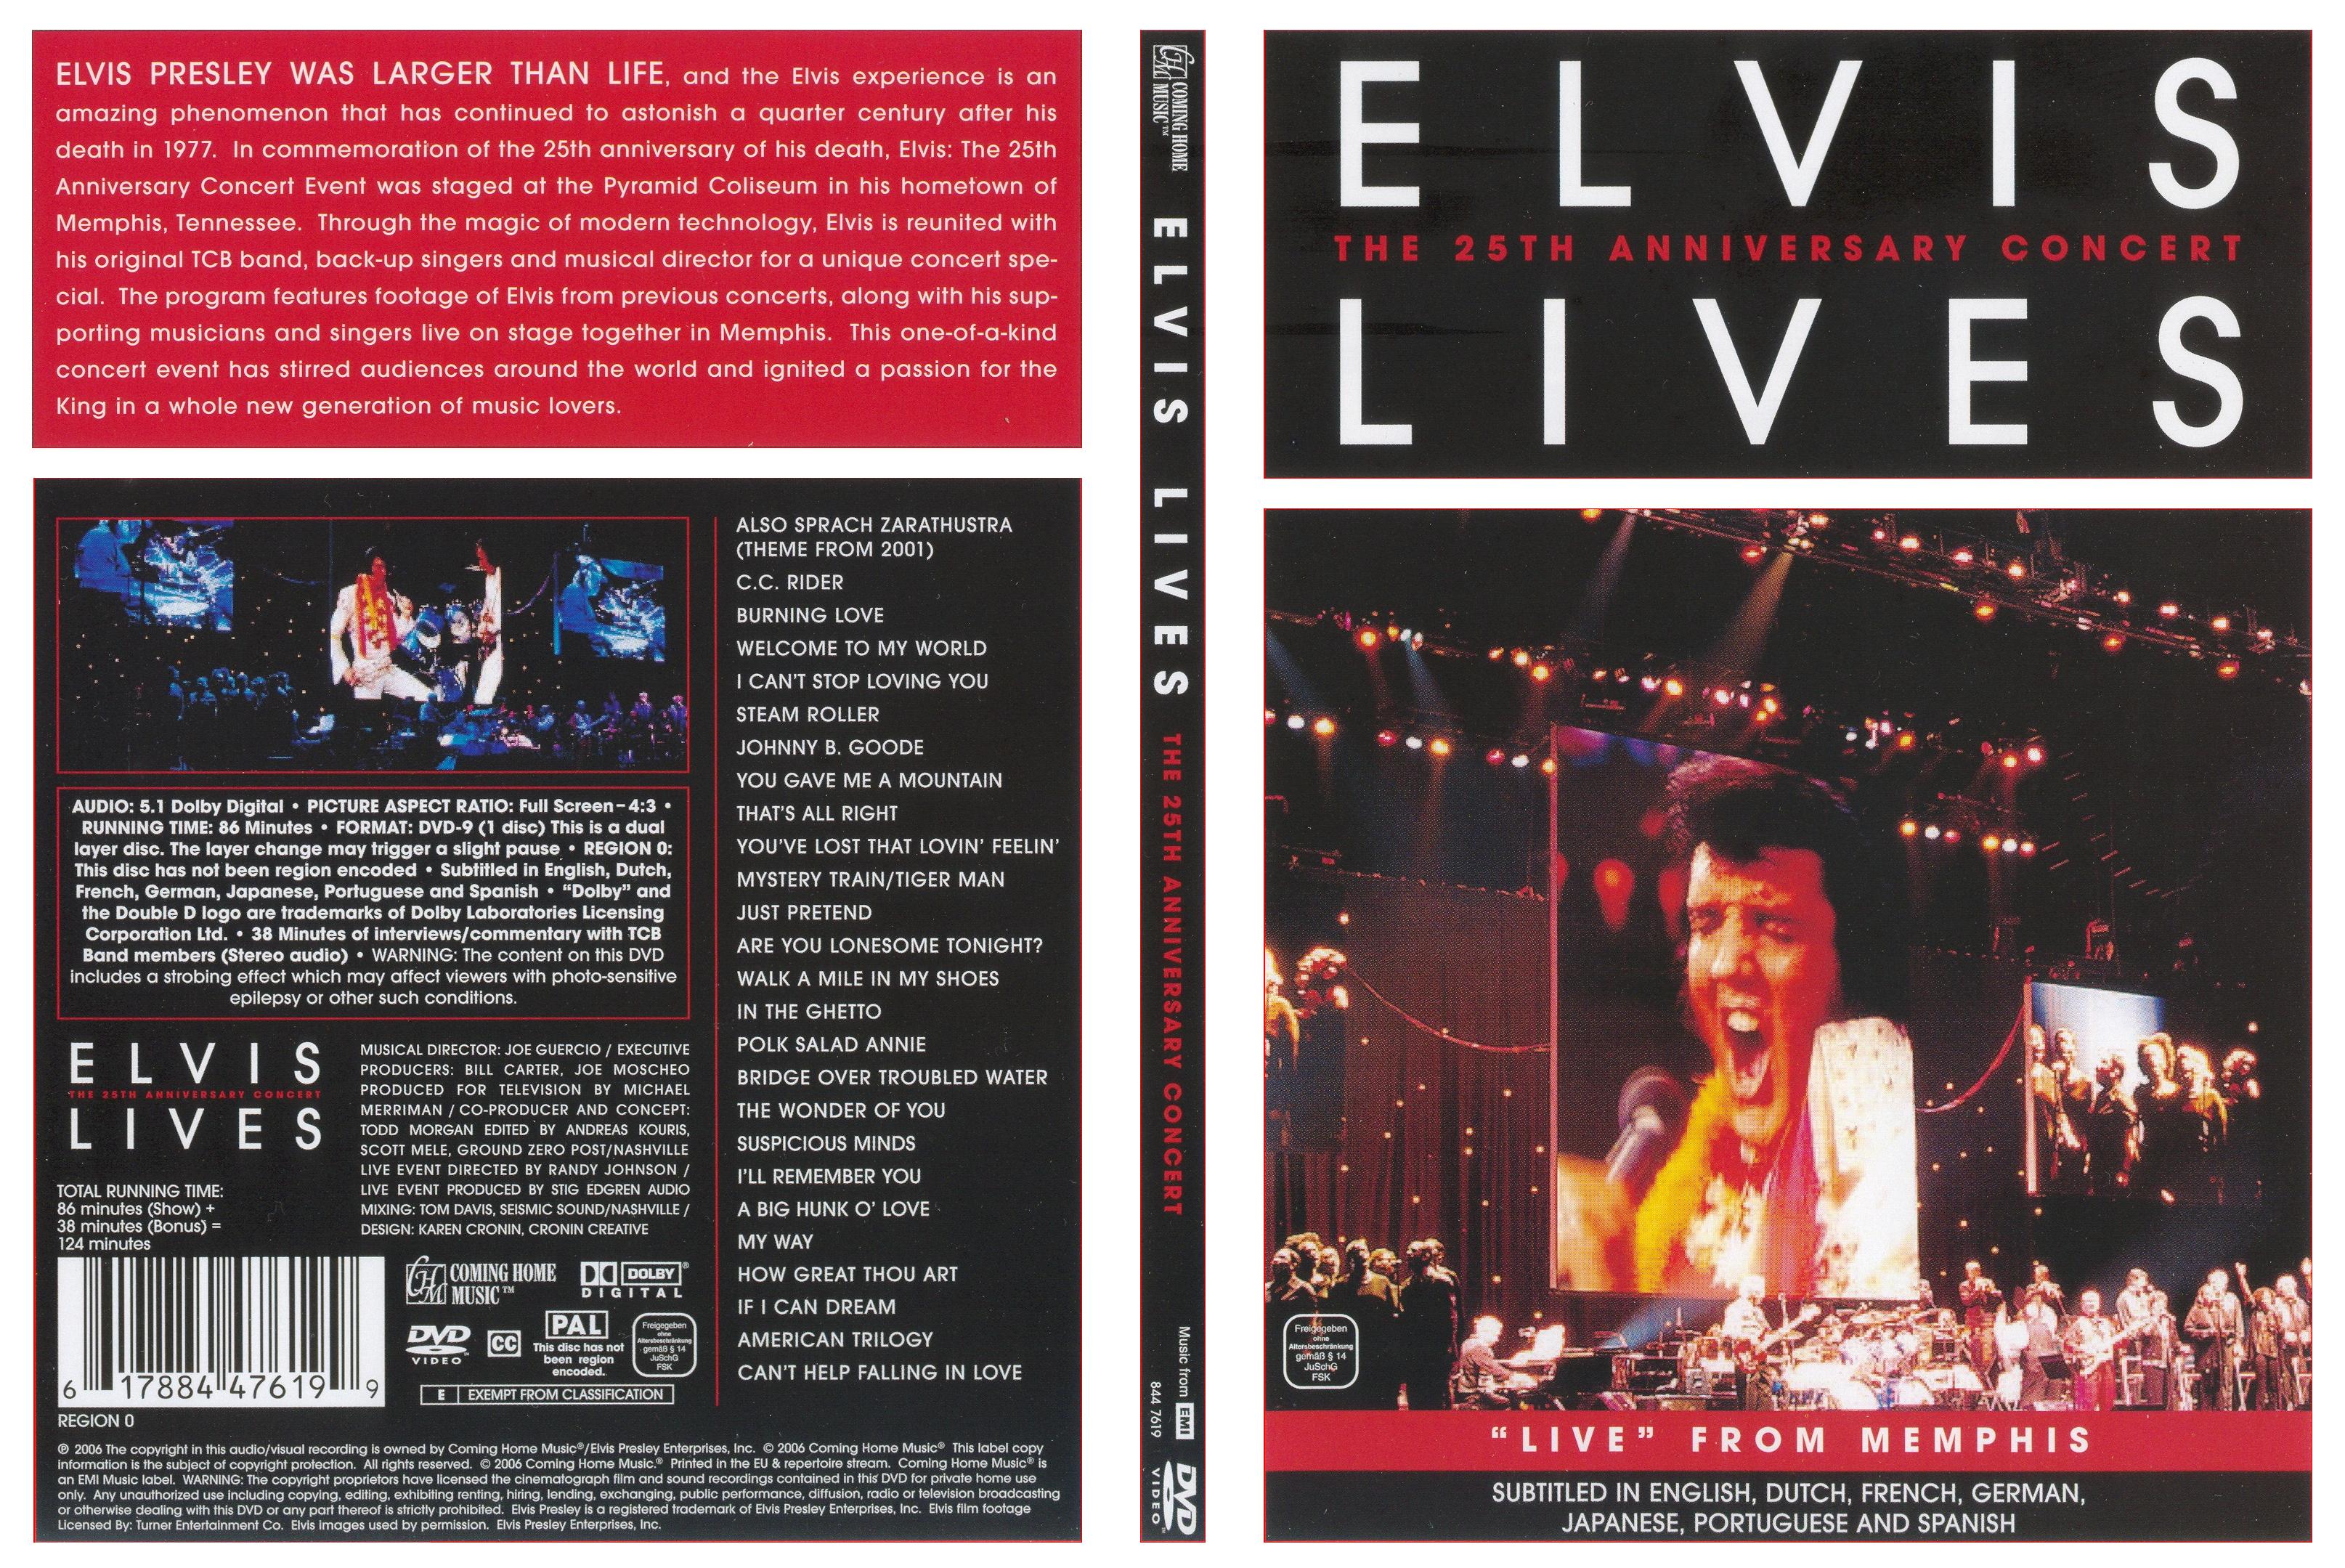 Jaquette DVD Elvis Presley 25me anniverssaire Live from Memphis